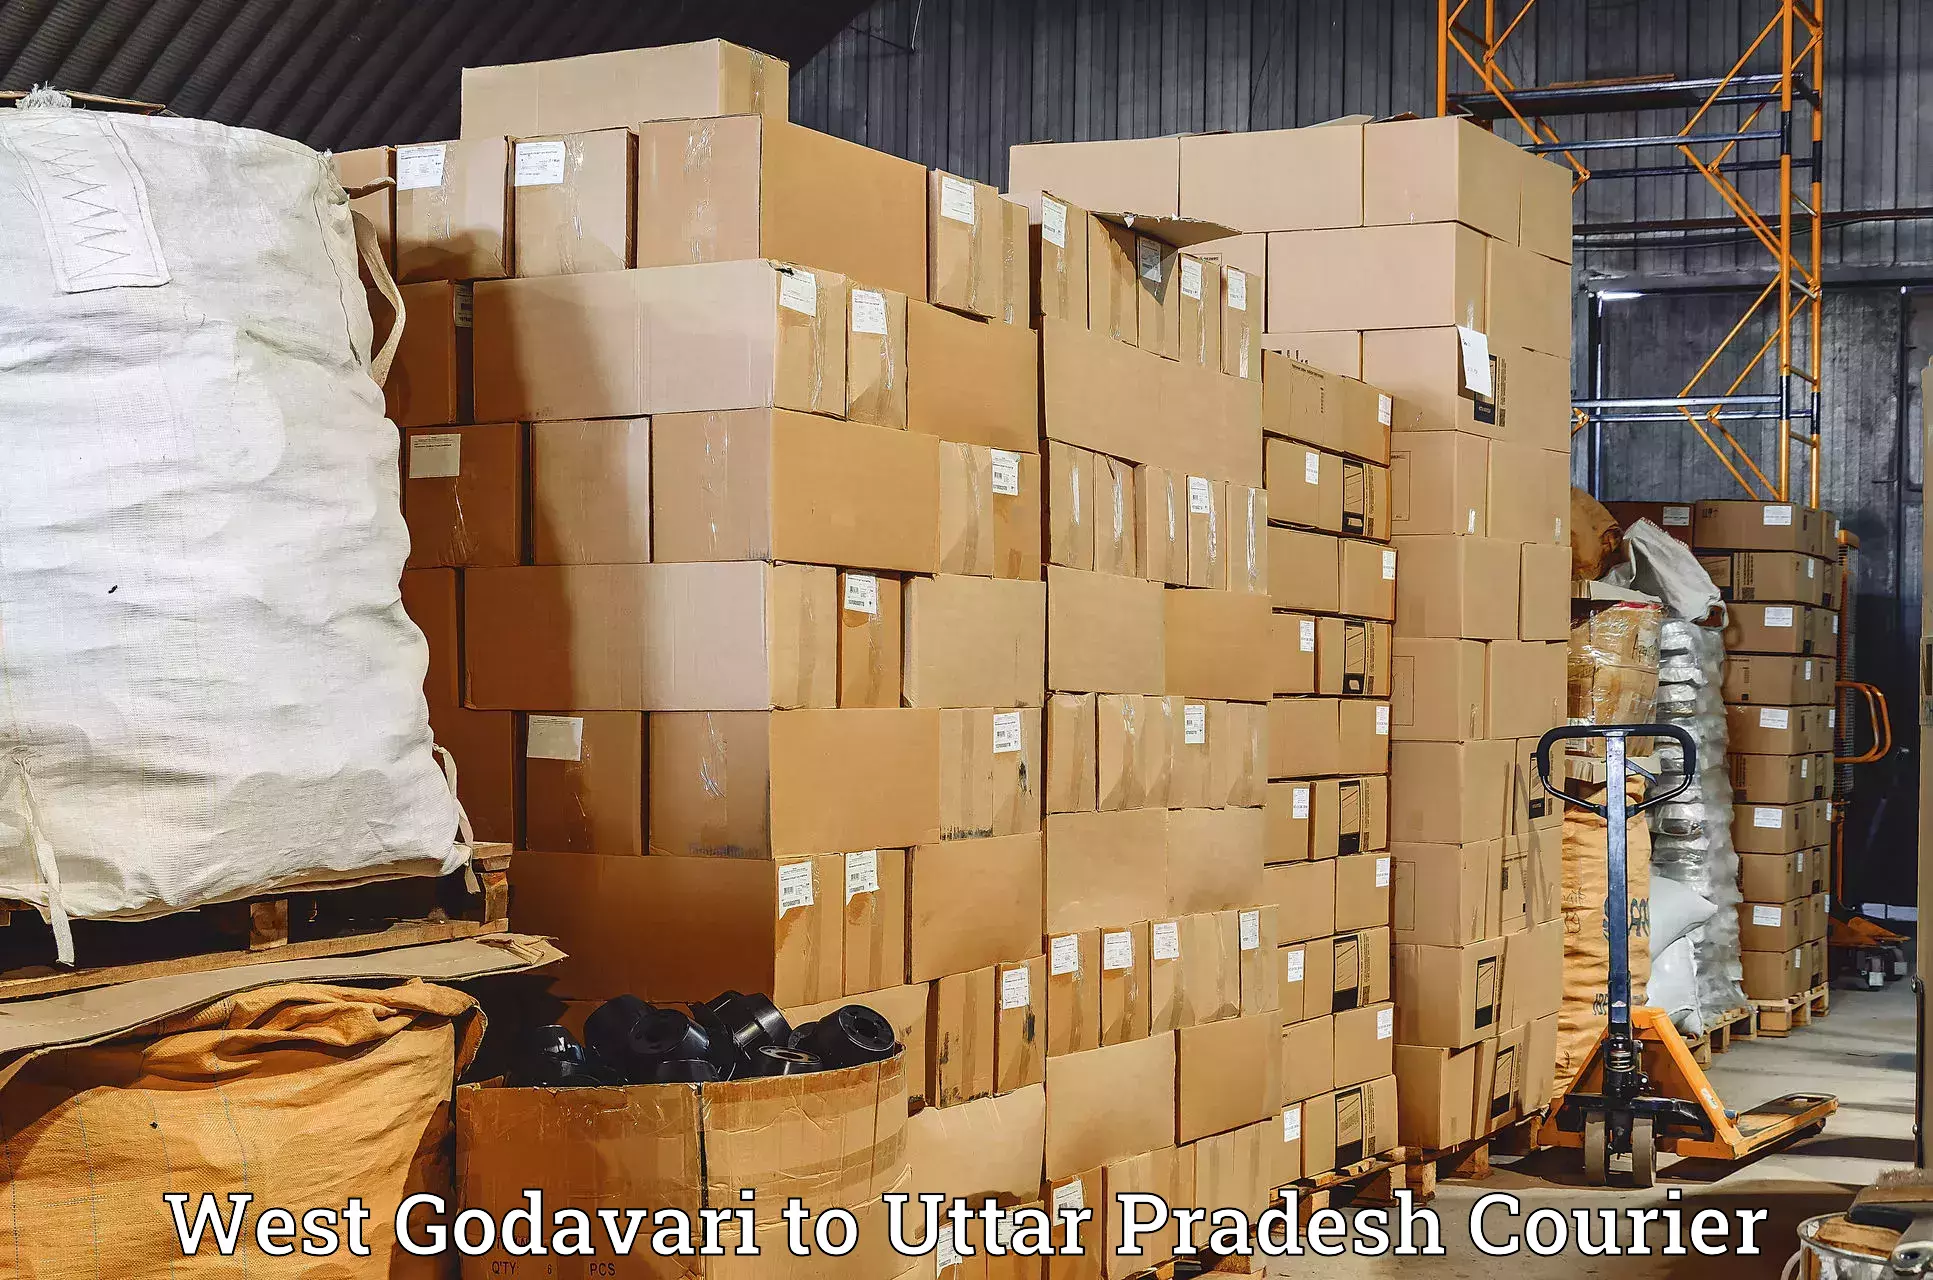 Speedy delivery service West Godavari to Kurebhar